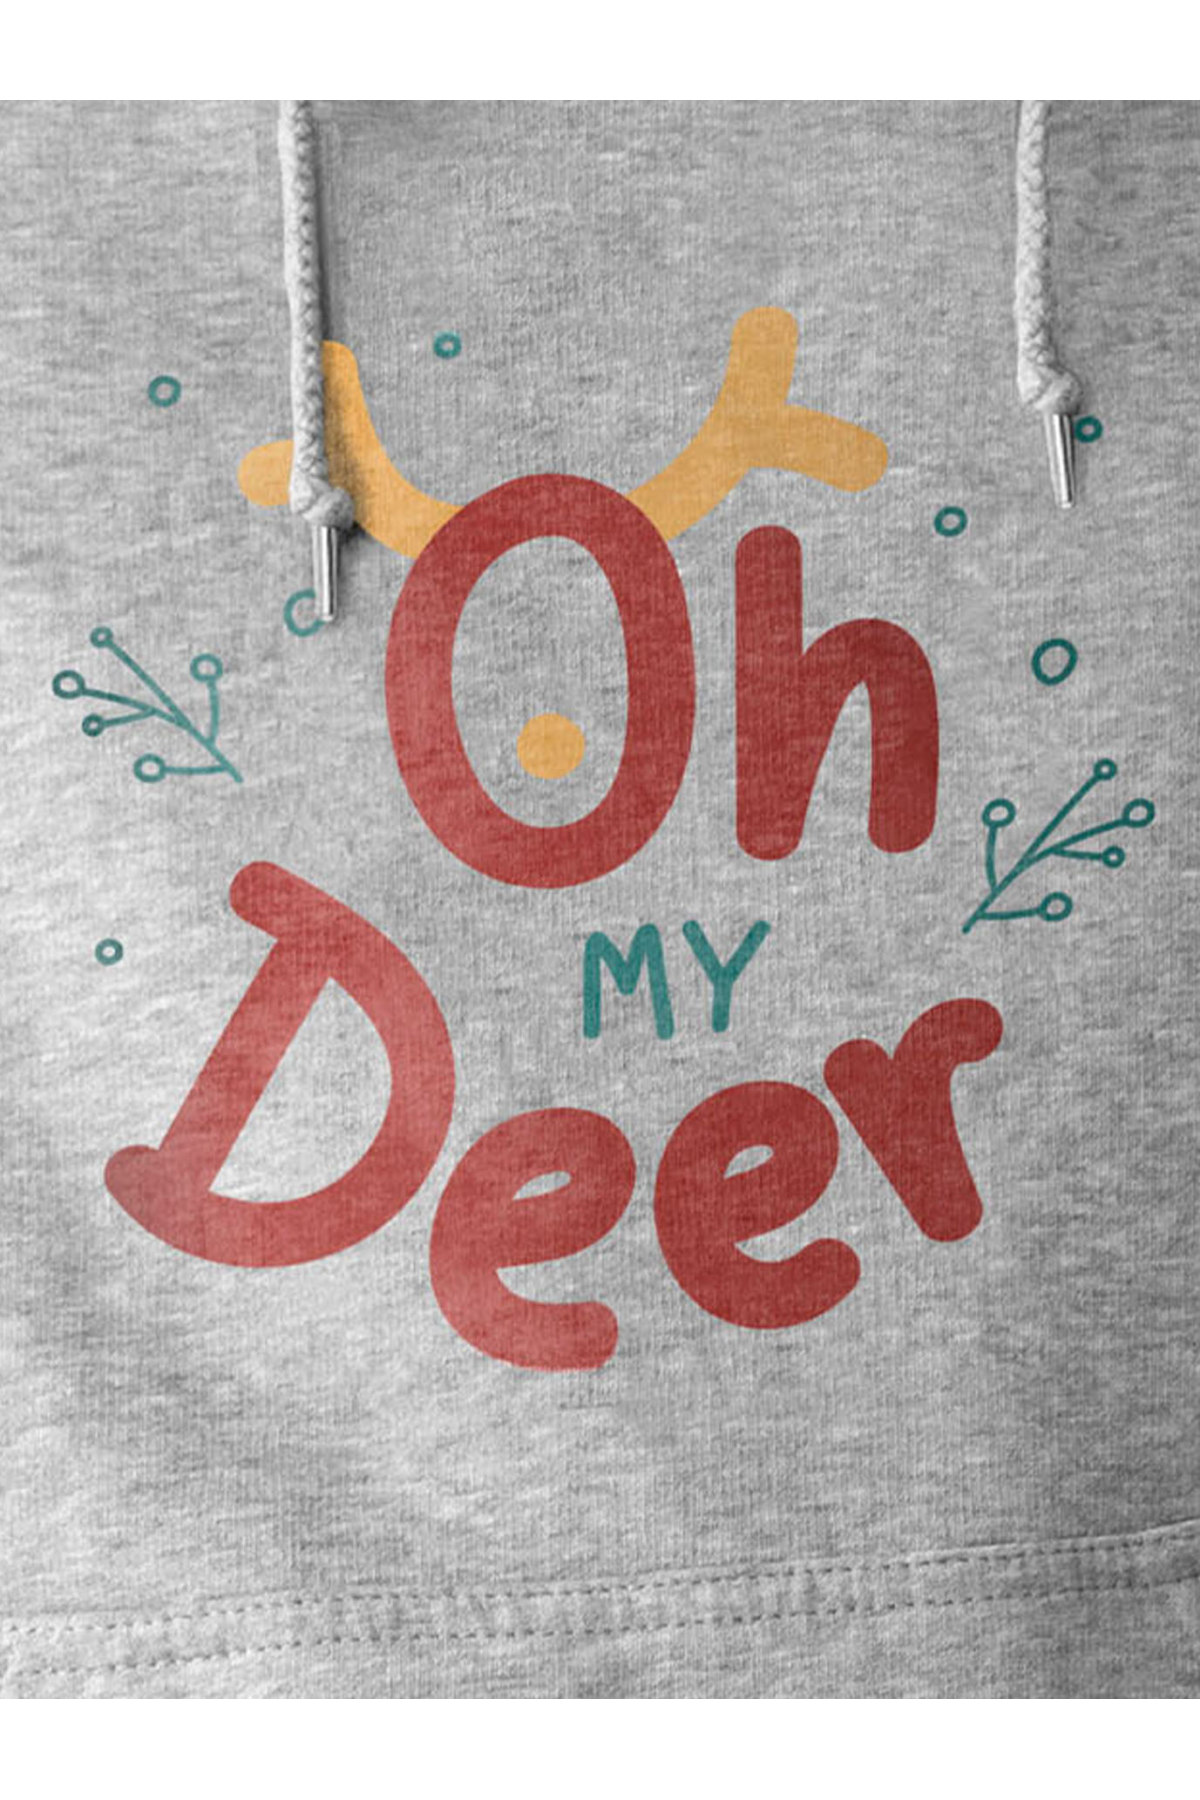 MIJUSTORE My Deer Yılbaşı Christmas Temalı Esprili Baskılı 3 İplik Kalın Sweatshirt Hoodie